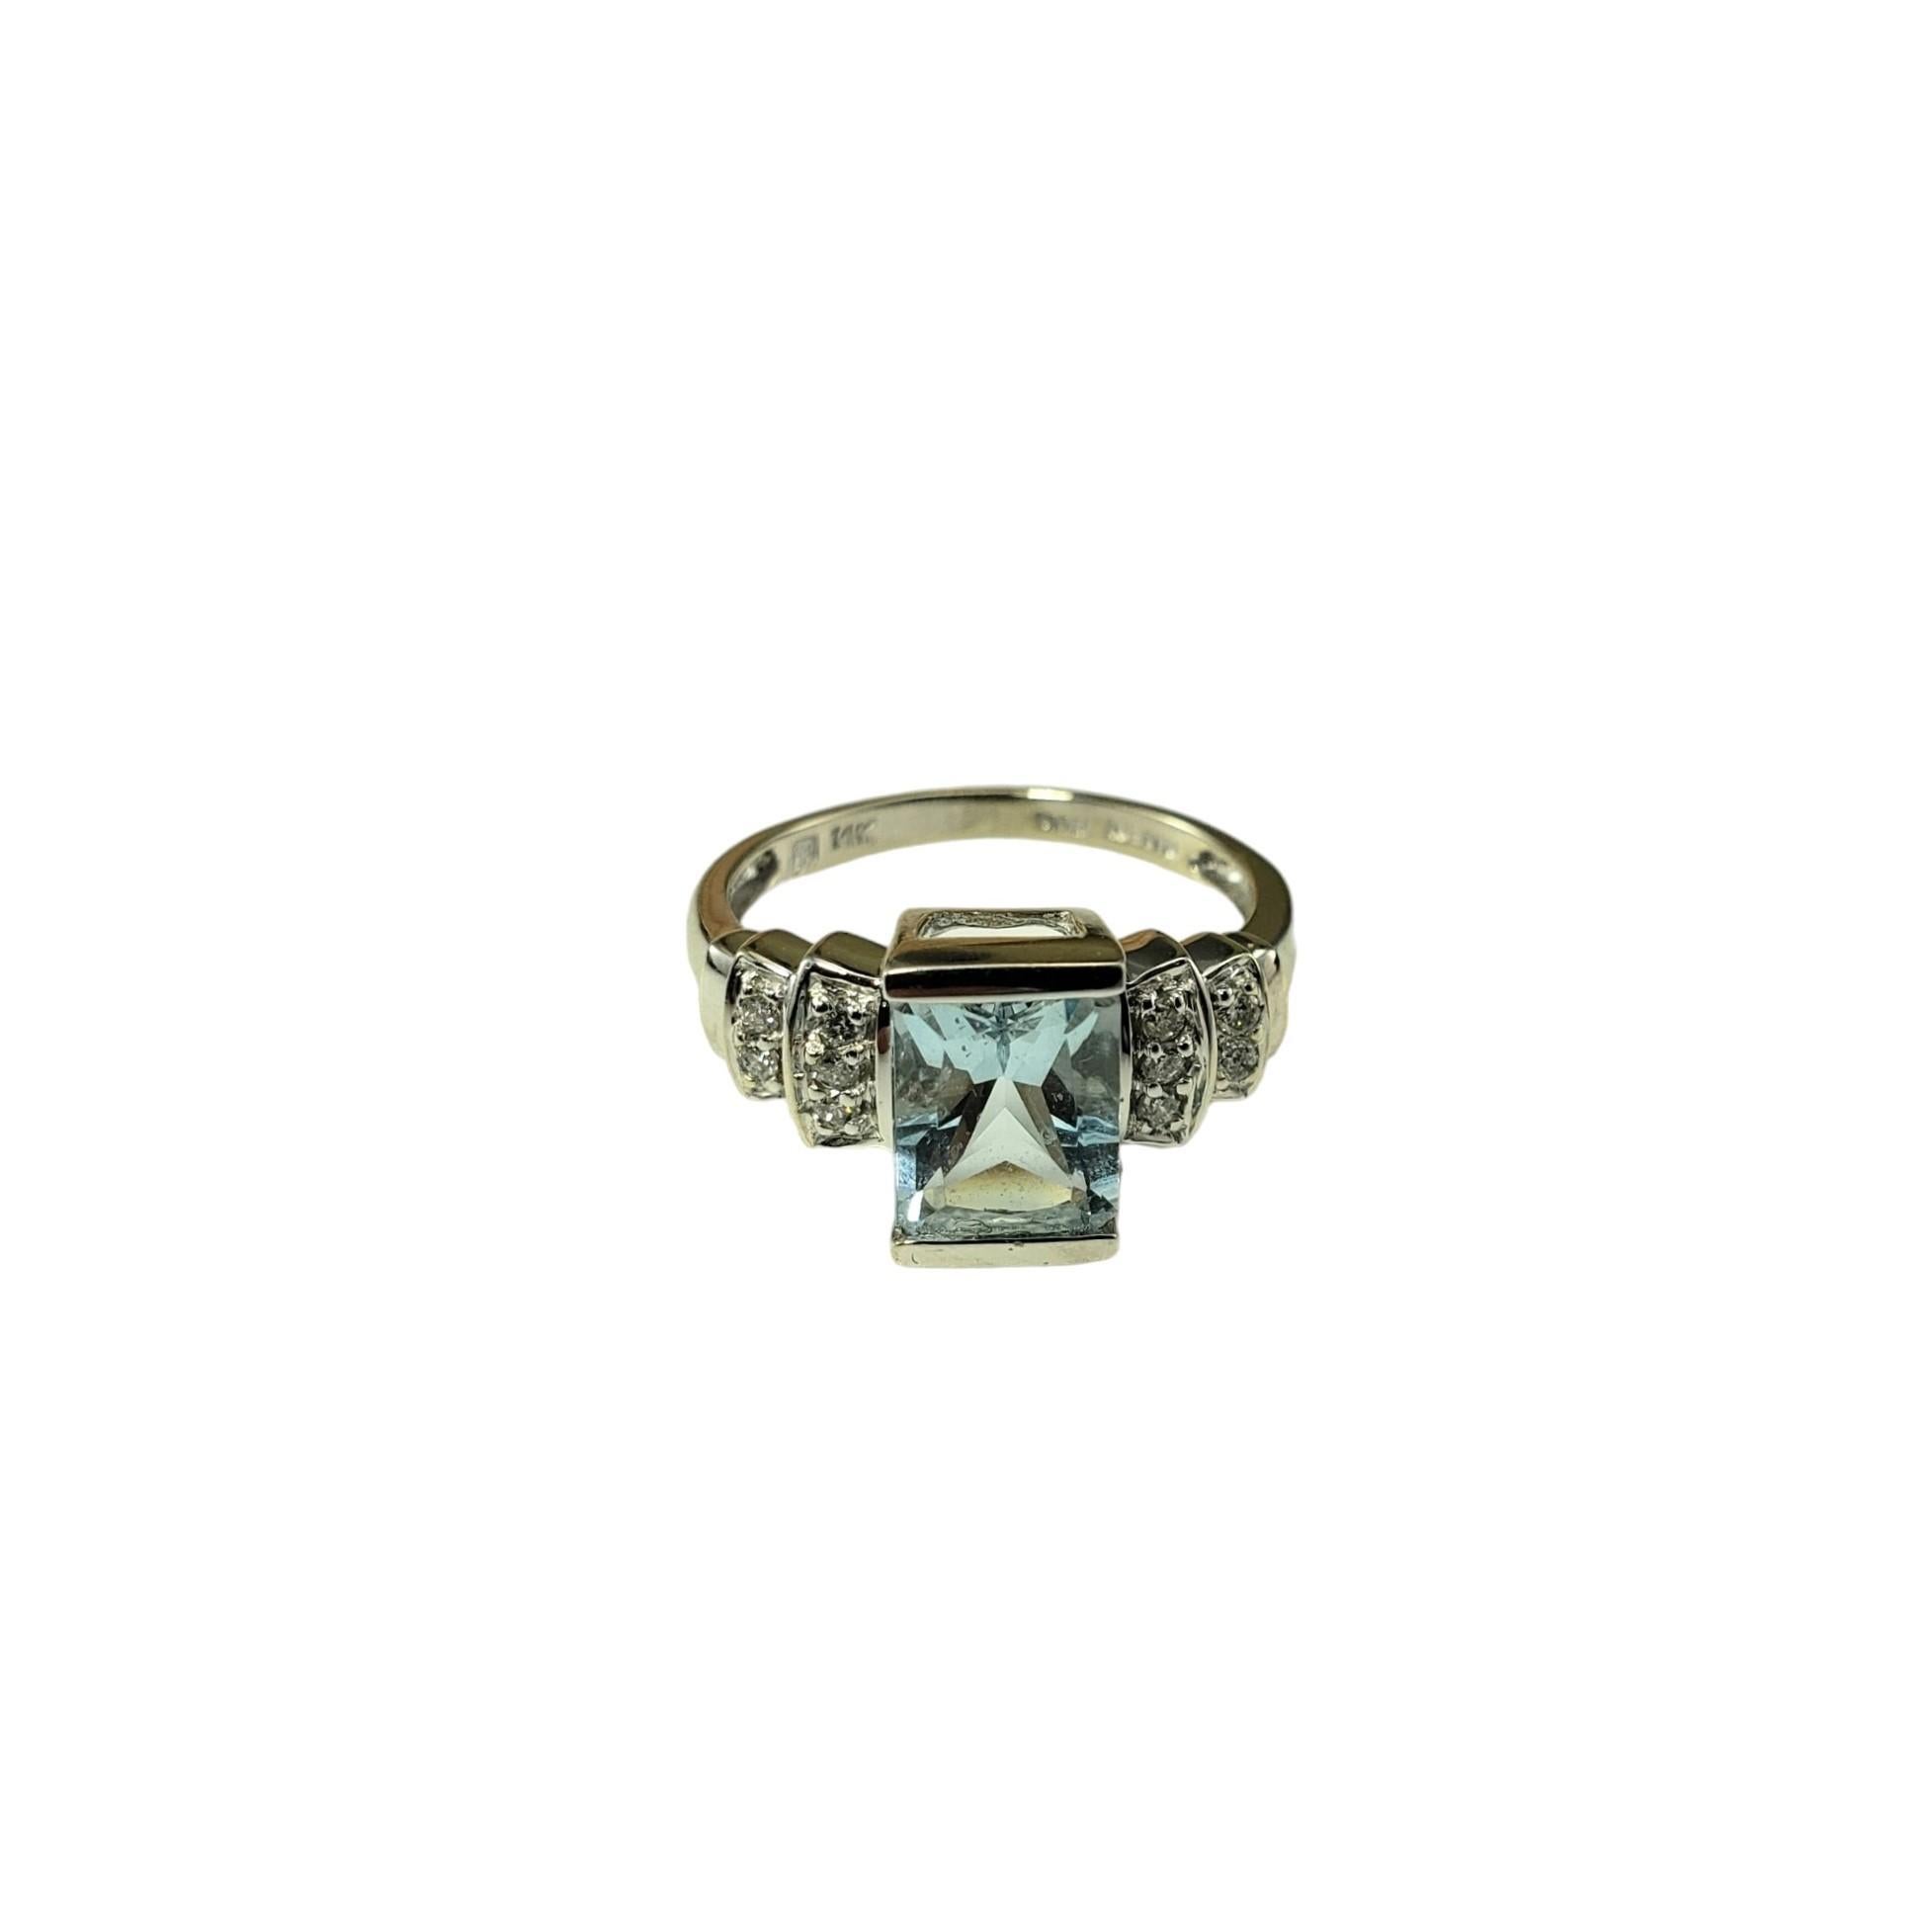 14 Karat Weißgold Aquamarin und Diamant Ring Größe 5,25

Dieser atemberaubende Ring besteht aus einem Aquamarin im Smaragdschliff (8 mm x 6 mm) und zehn runden Diamanten im Brillantschliff, gefasst in klassischem 14-karätigem Weißgold.  

Schaft: 2